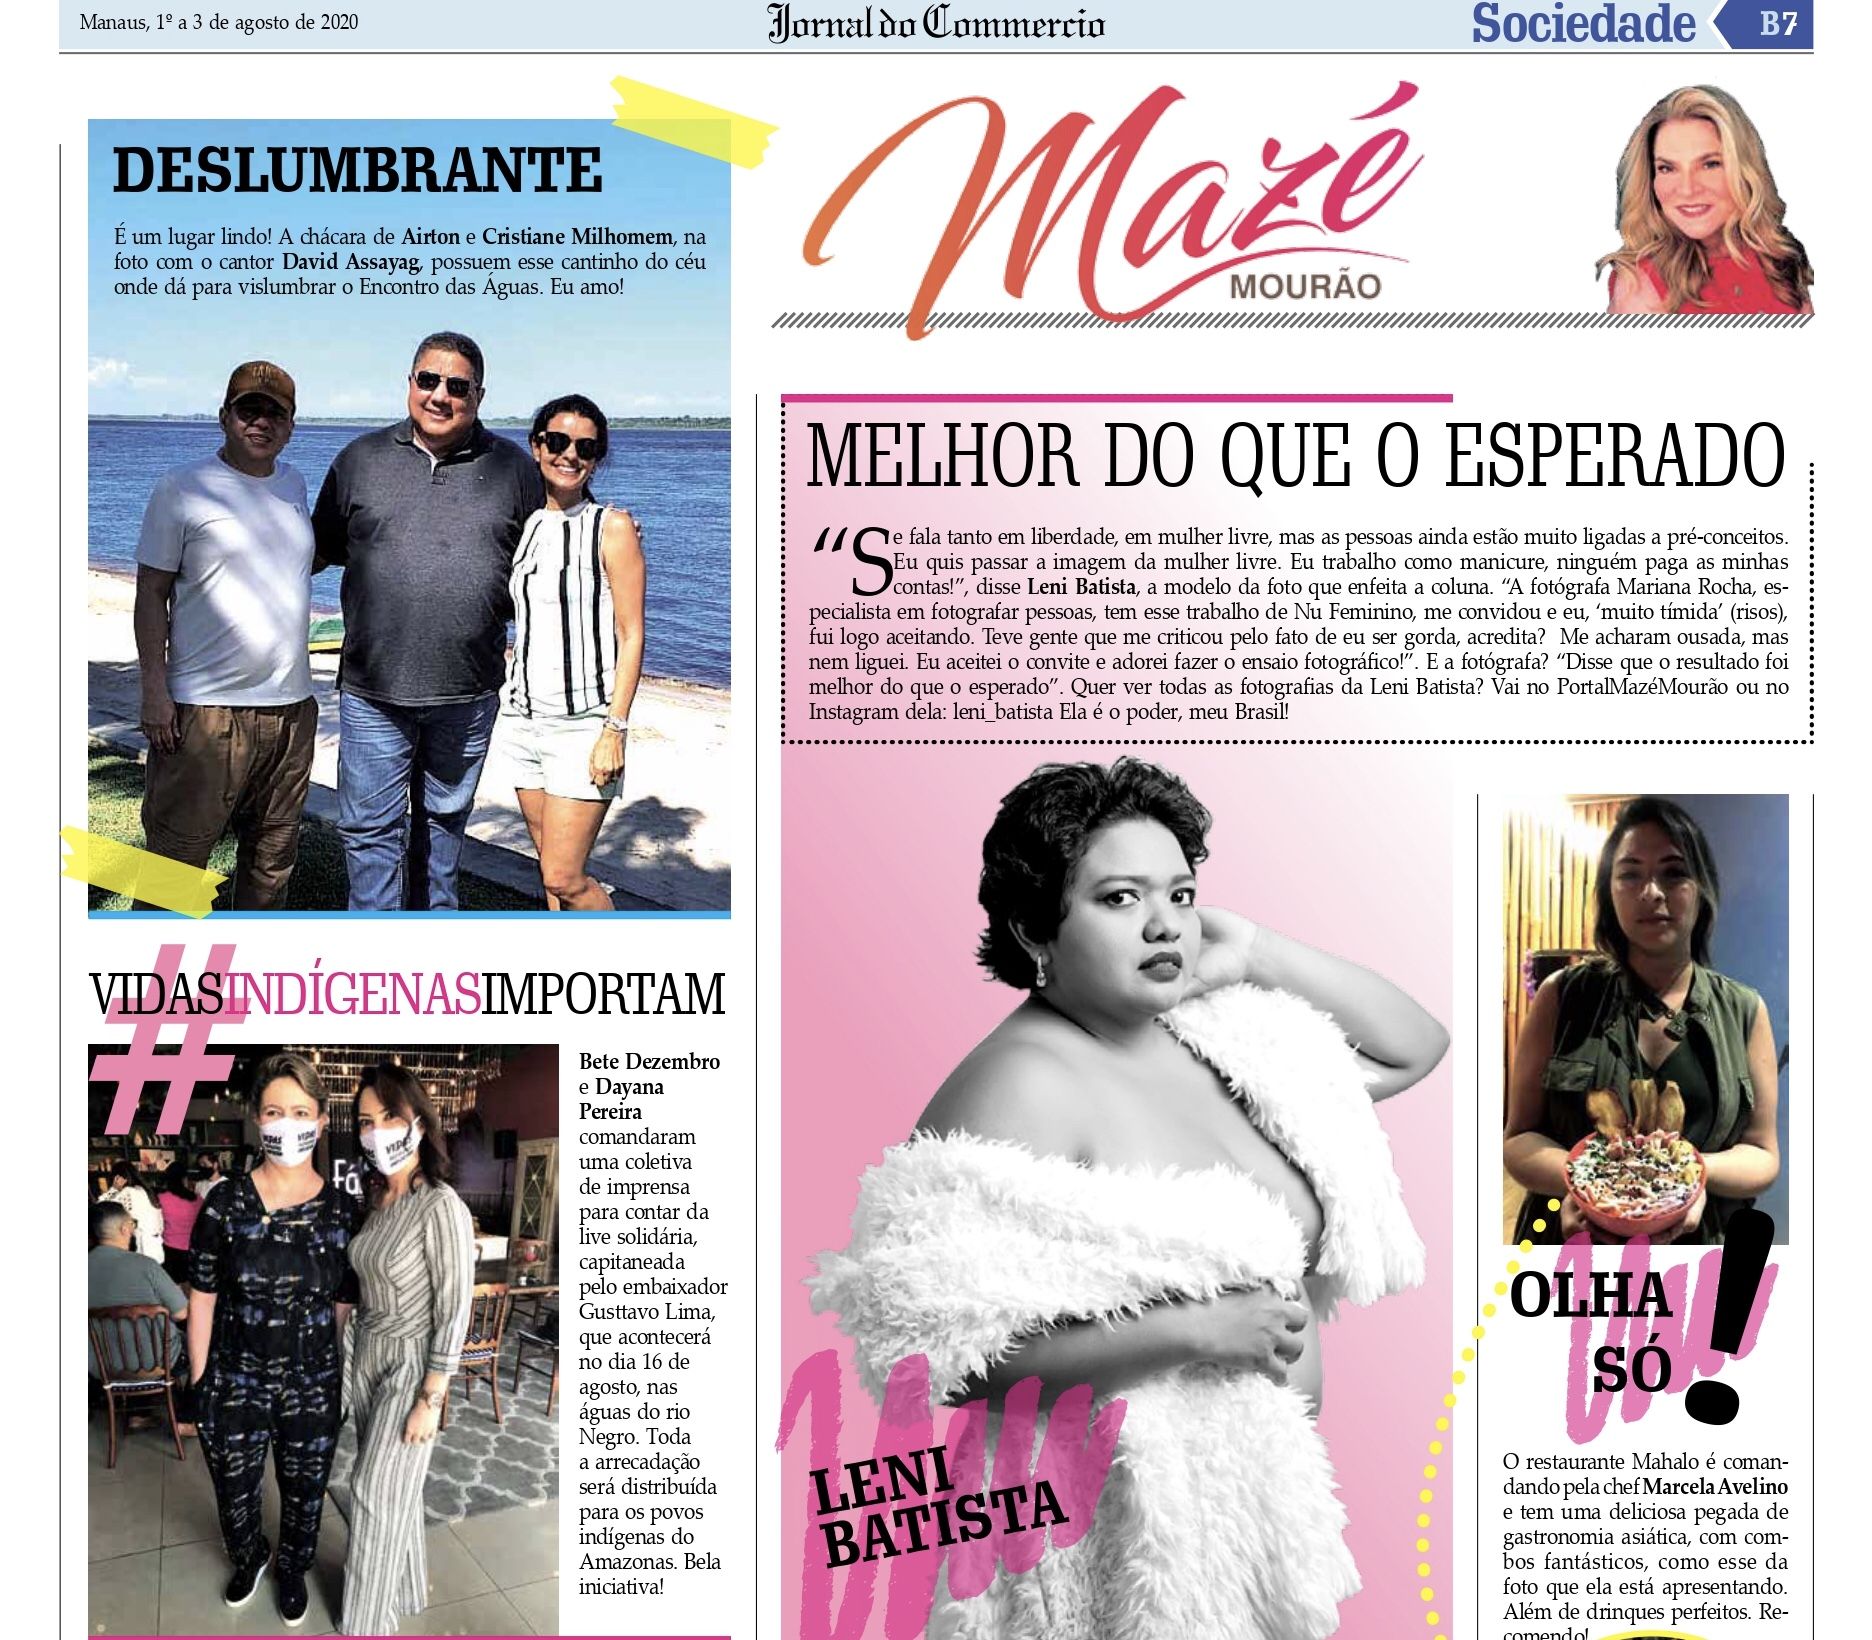 Coluna Social por Mazé Mourão - Jornal do Commercio